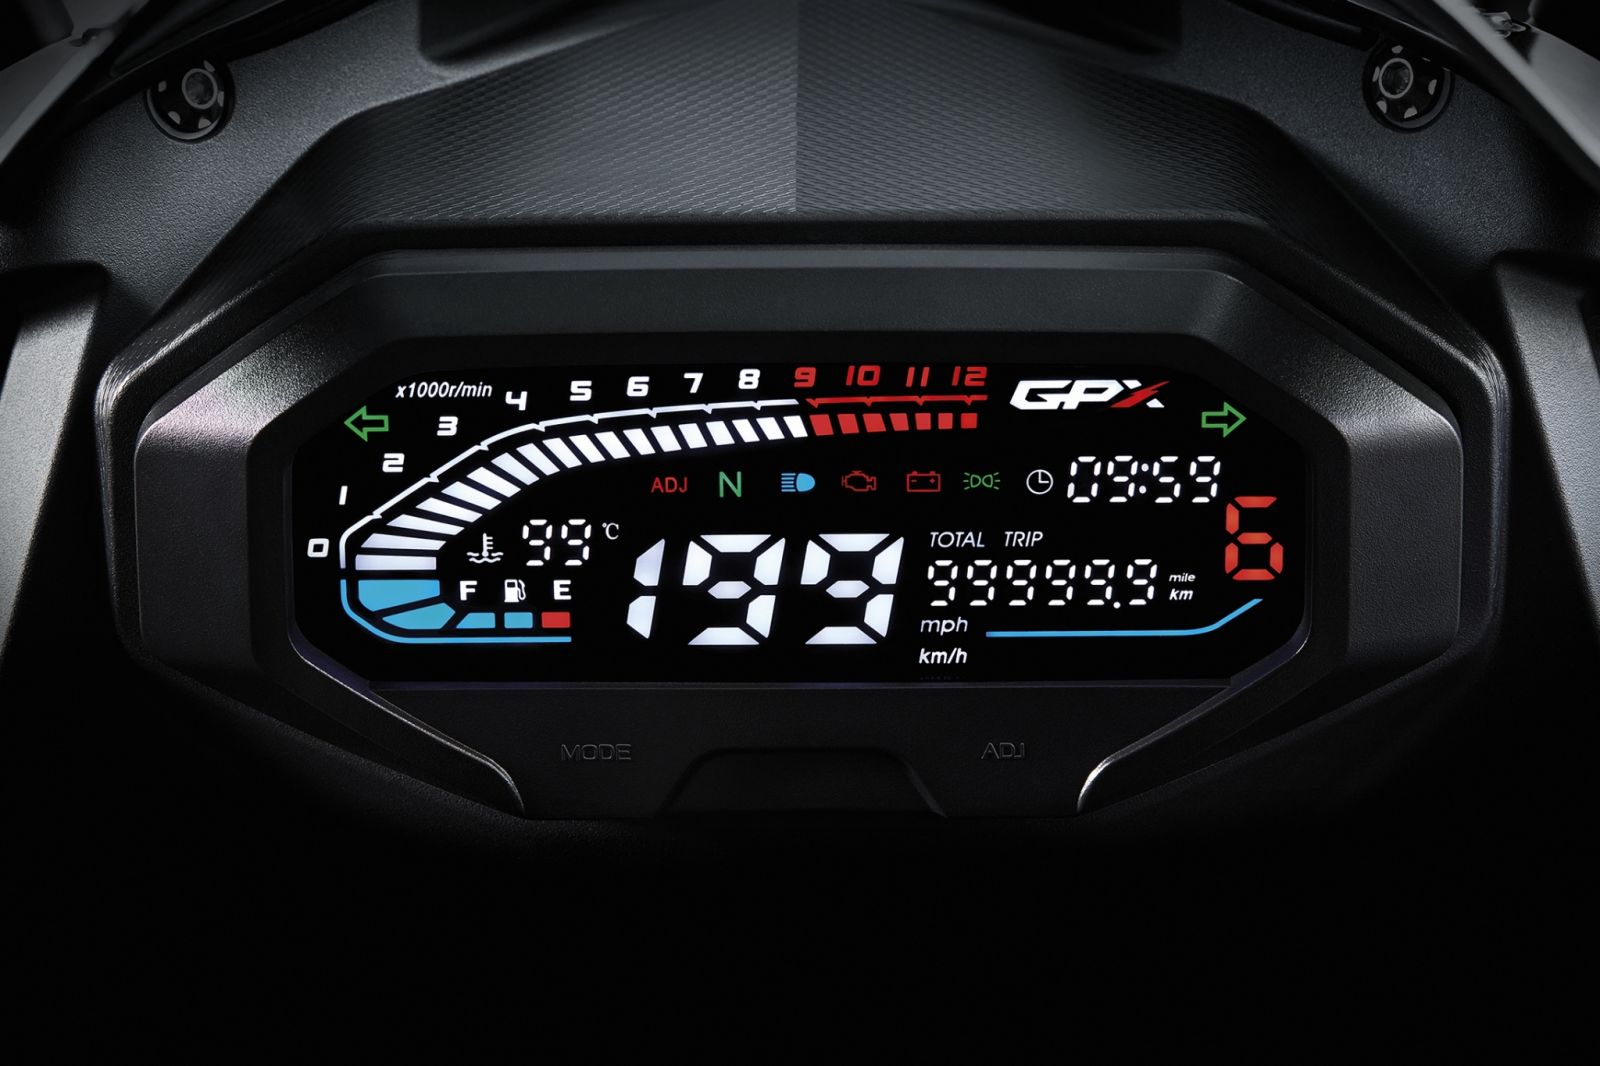 ดีไซน์โหด! New GPX DEMON GR200R สปอร์ตเต็มขั้นค่าตัวไม่ถึง 8 หมื่น